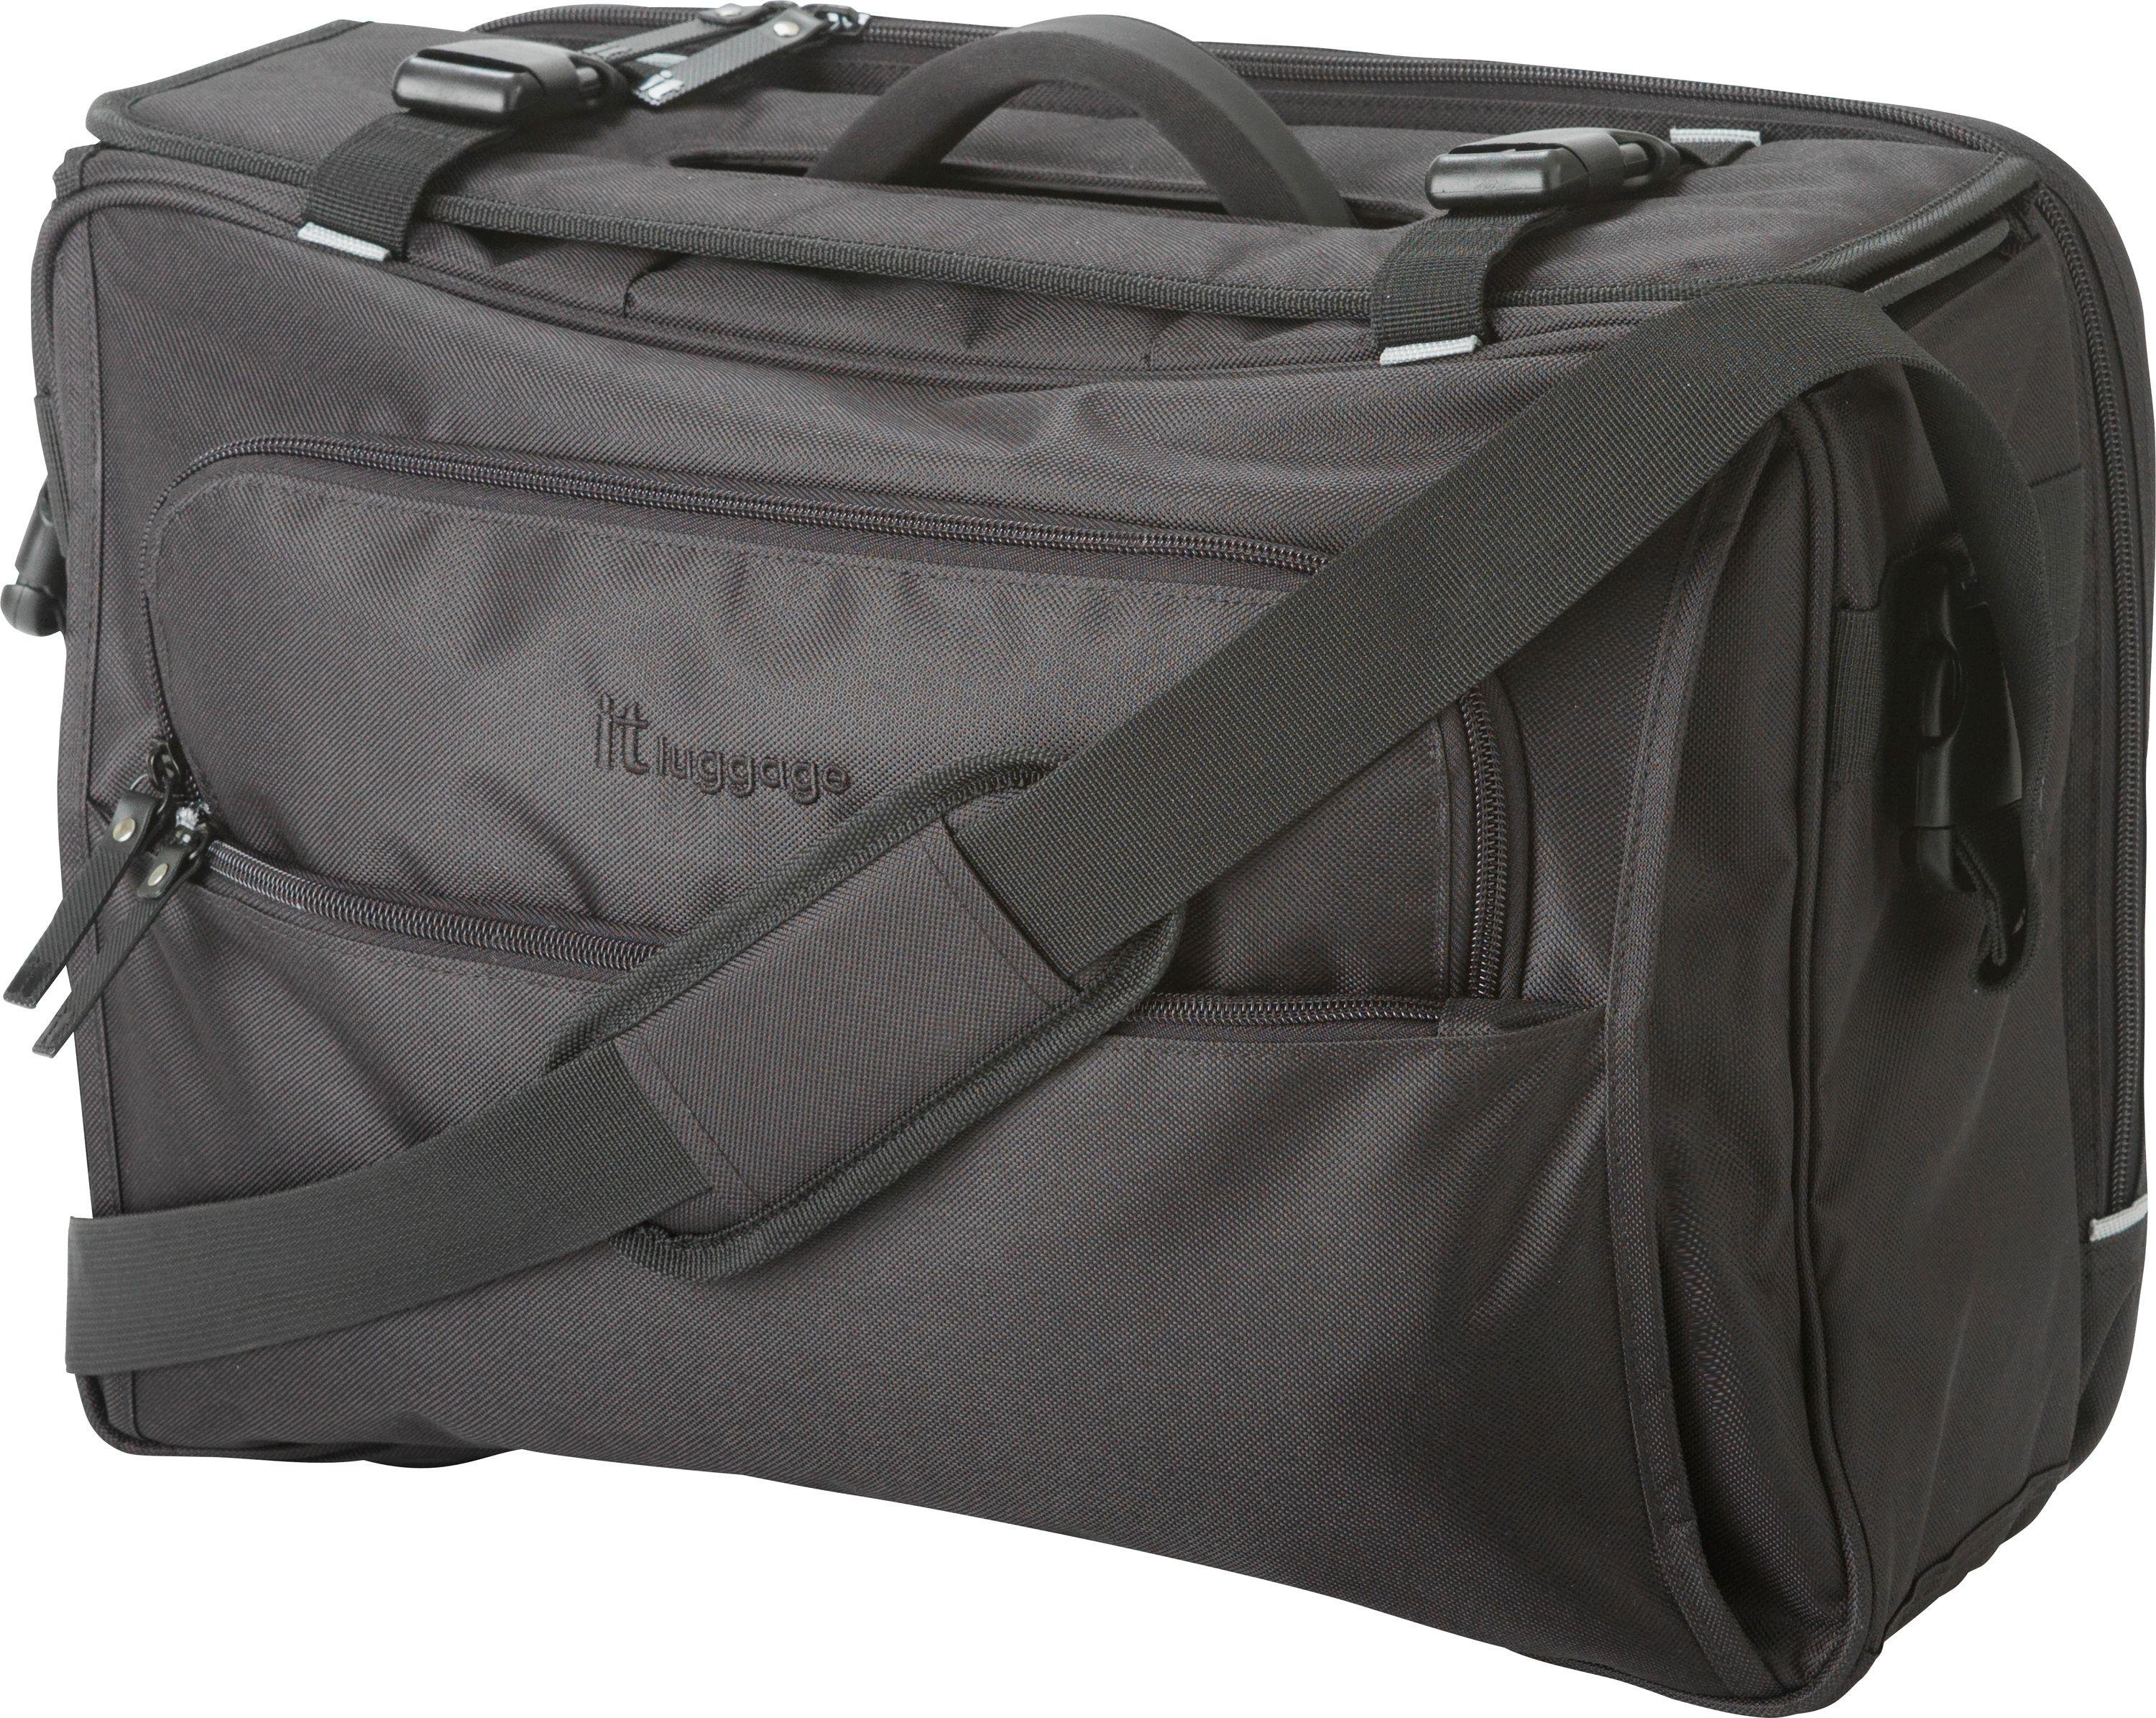 IT Luggage Business Shoulder Bag - Black